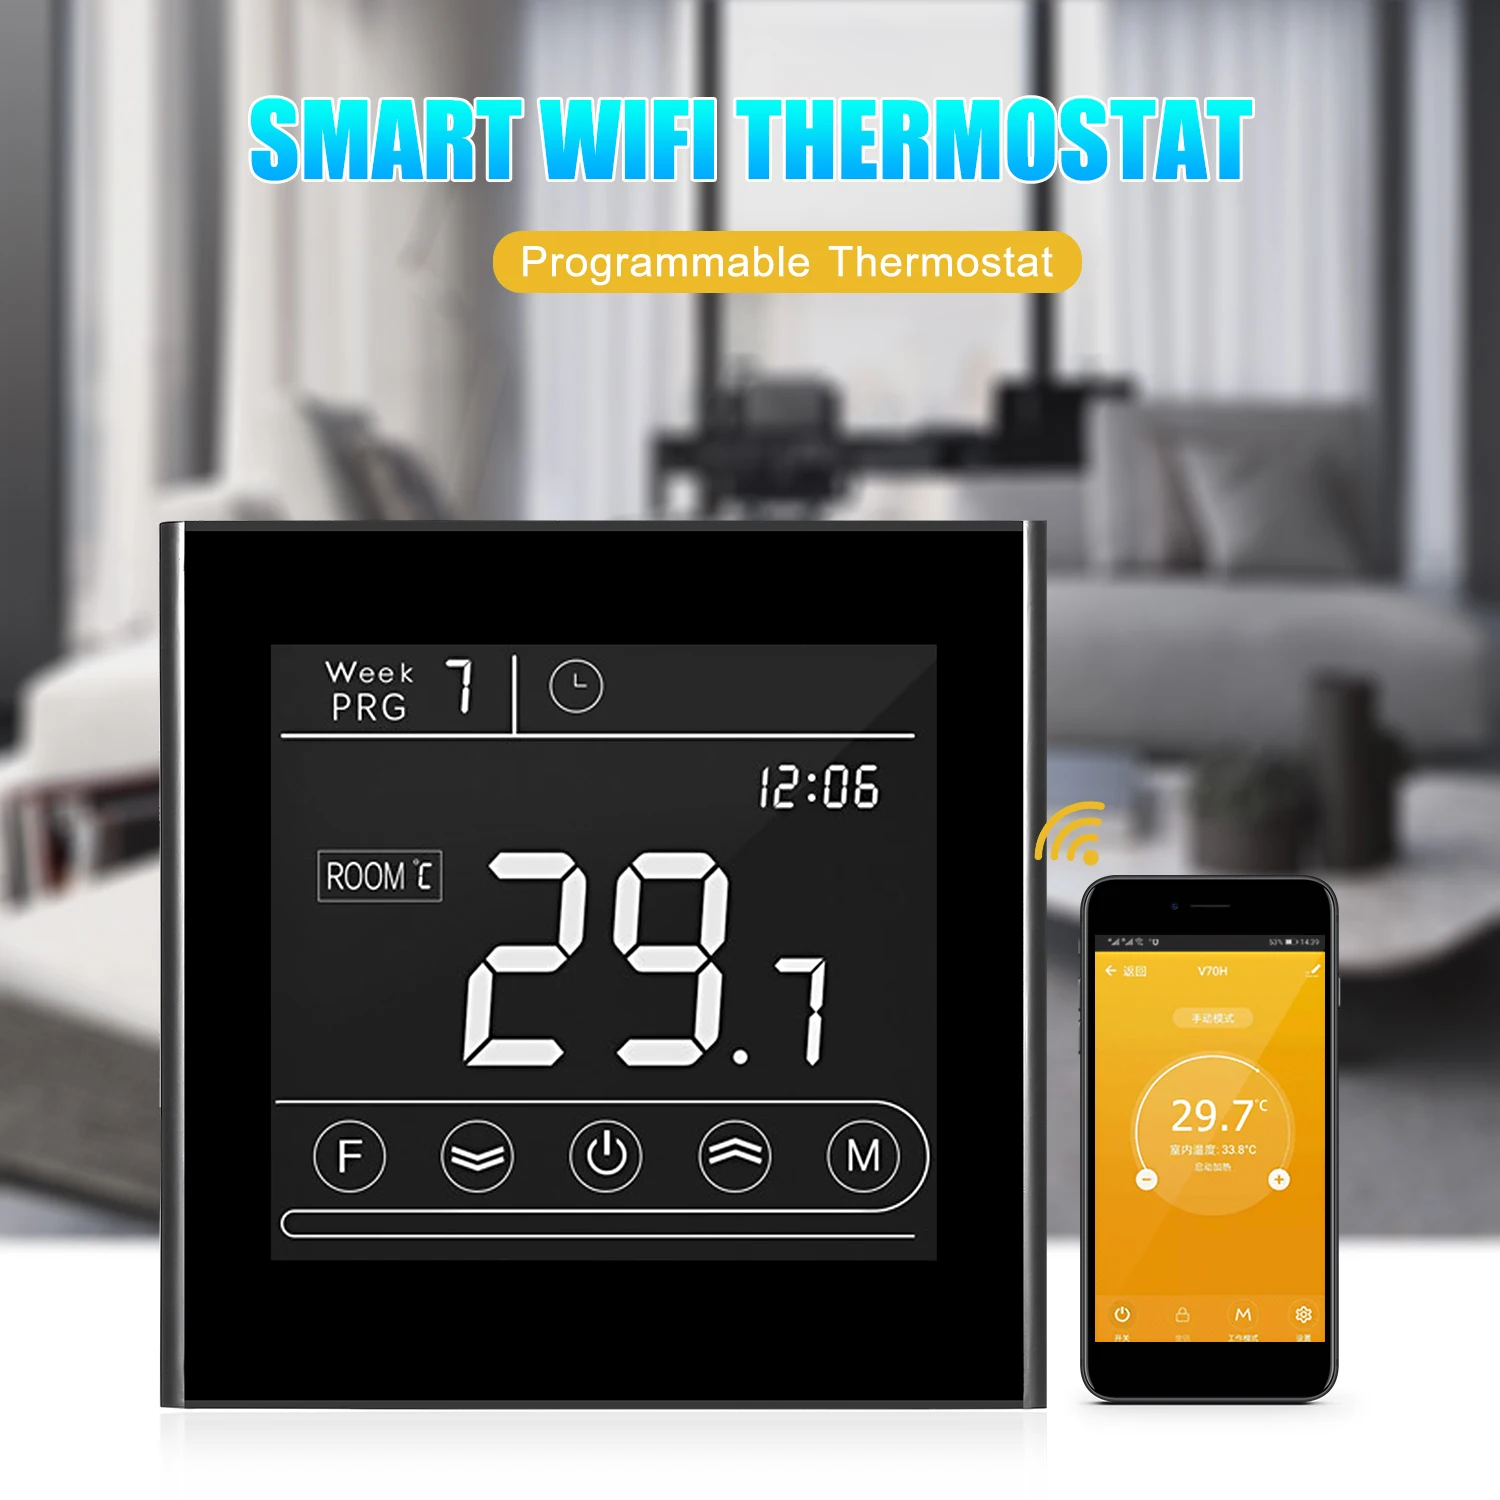 

Программируемый термостат для газового котла, умный Wi-Fi термостат для контроля температуры, светодиодный дисплей, сенсорная подсветка, дис...